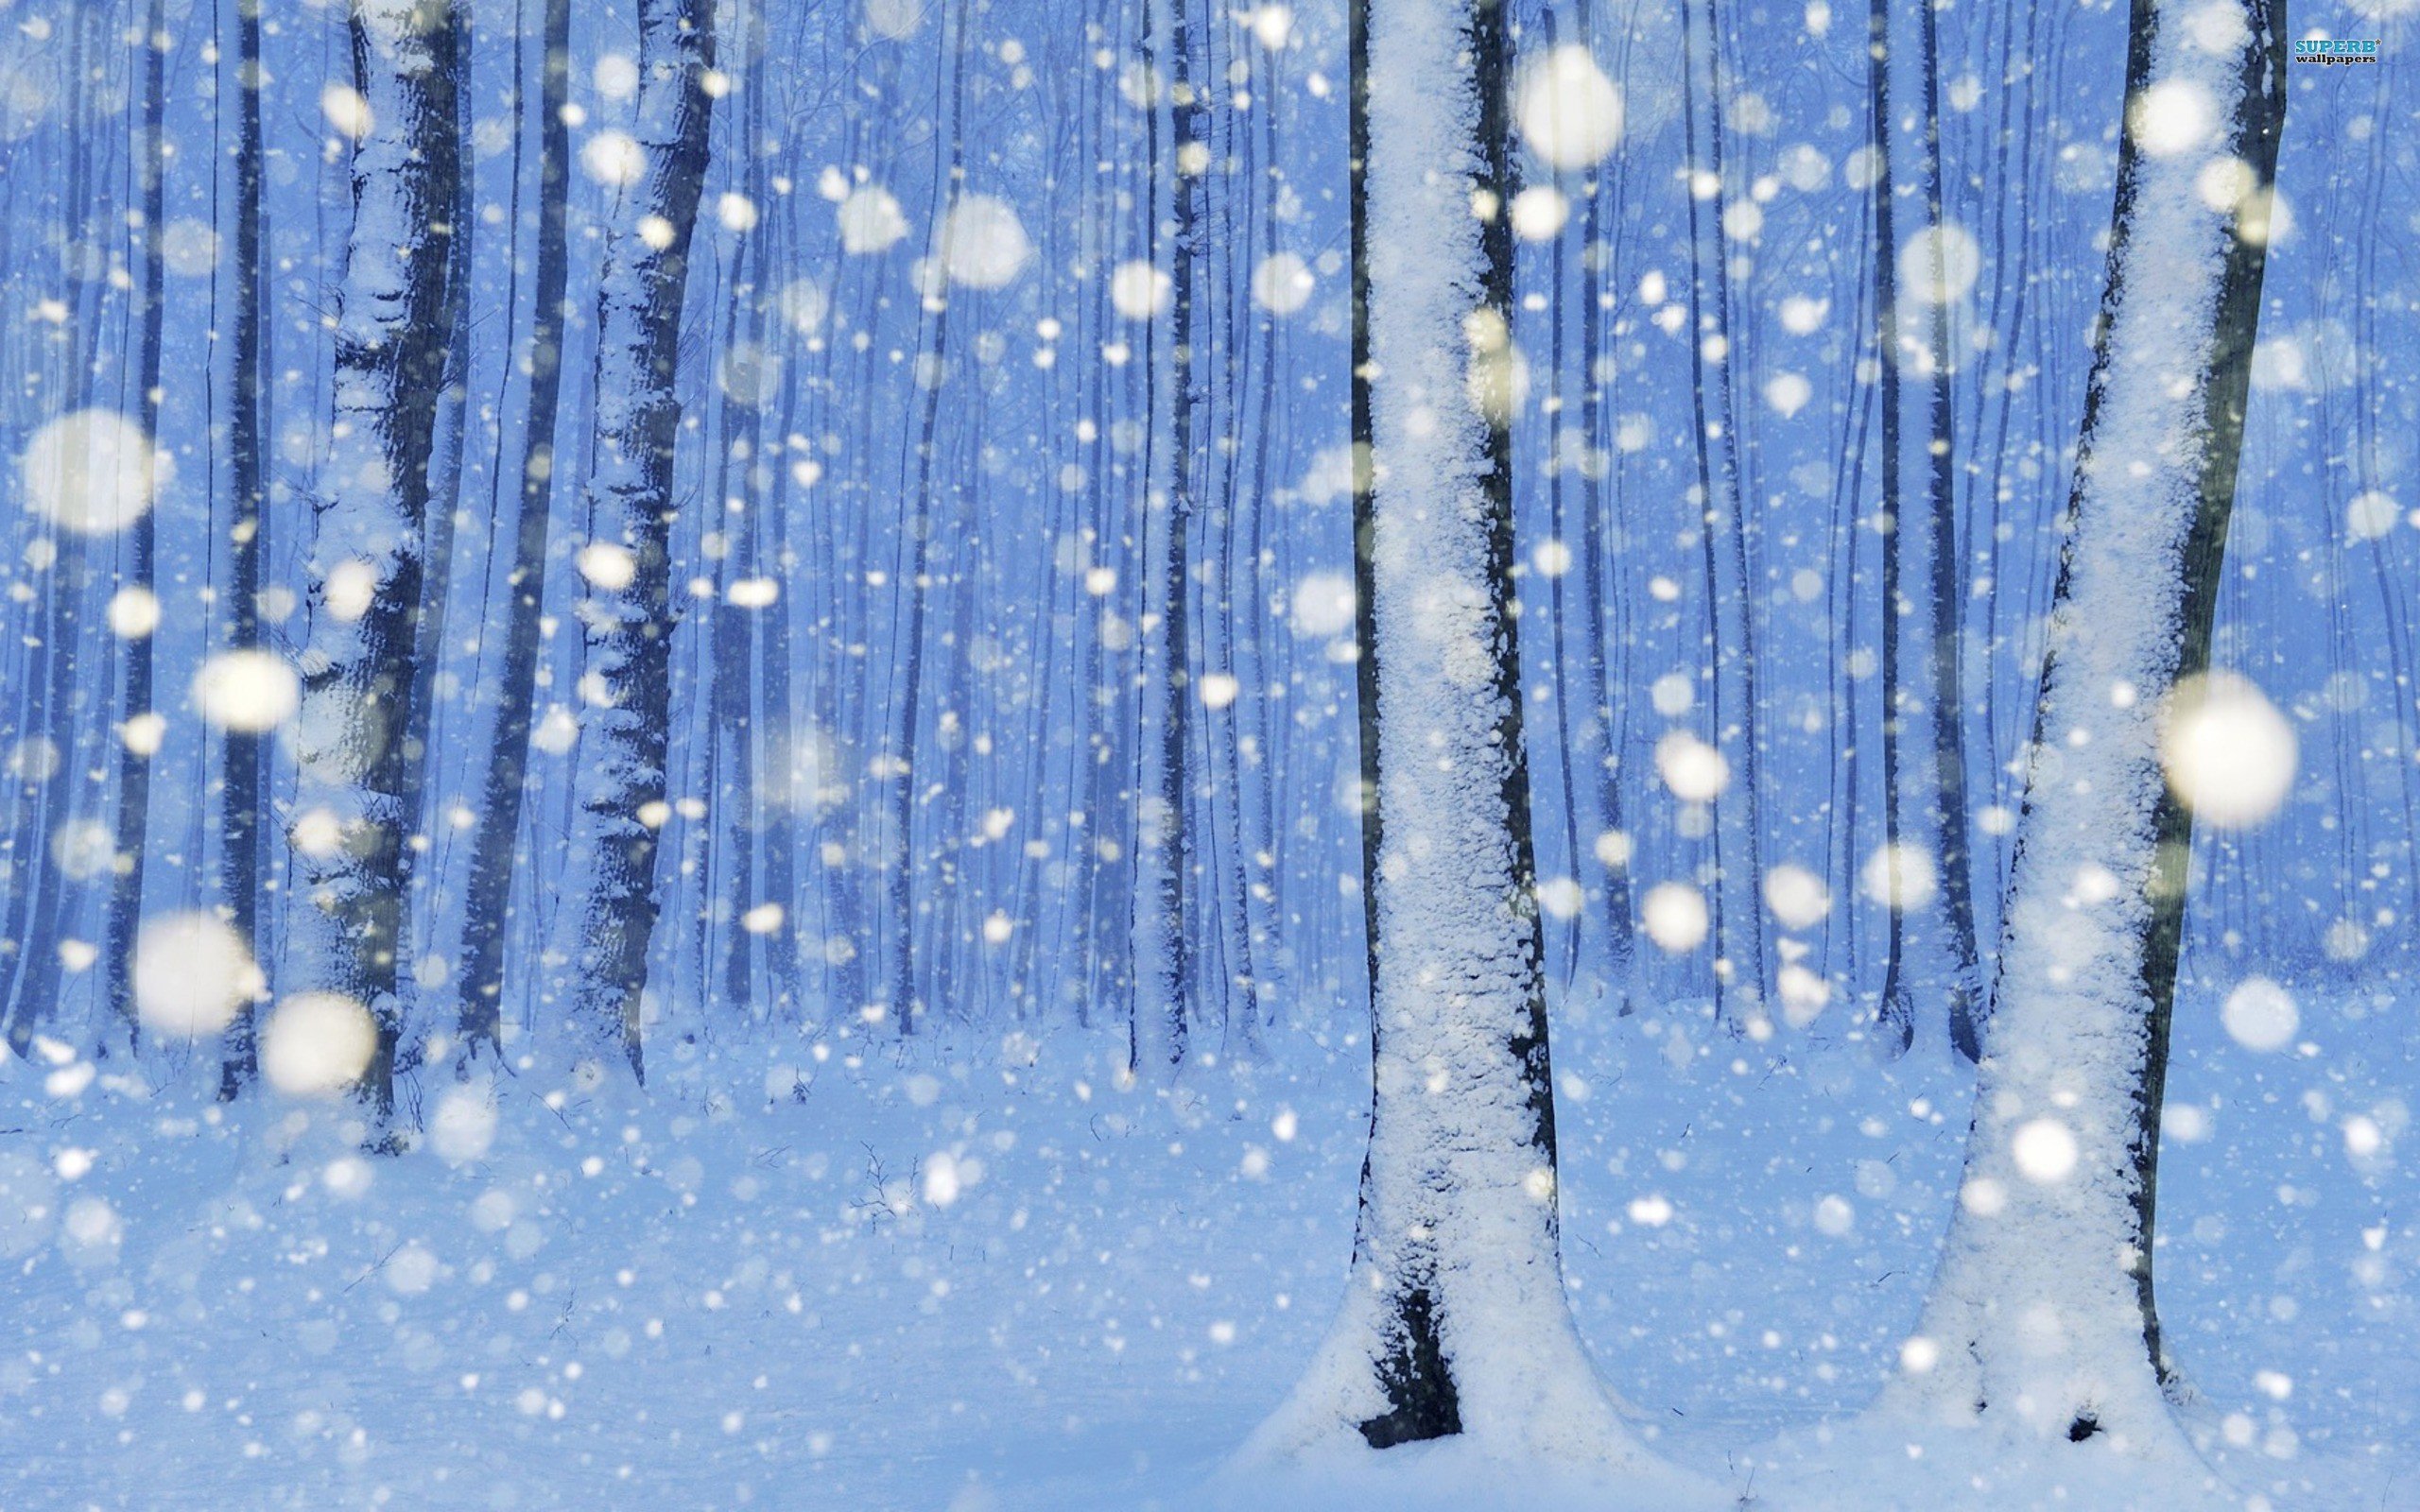 деревья в снегу картинка для детей